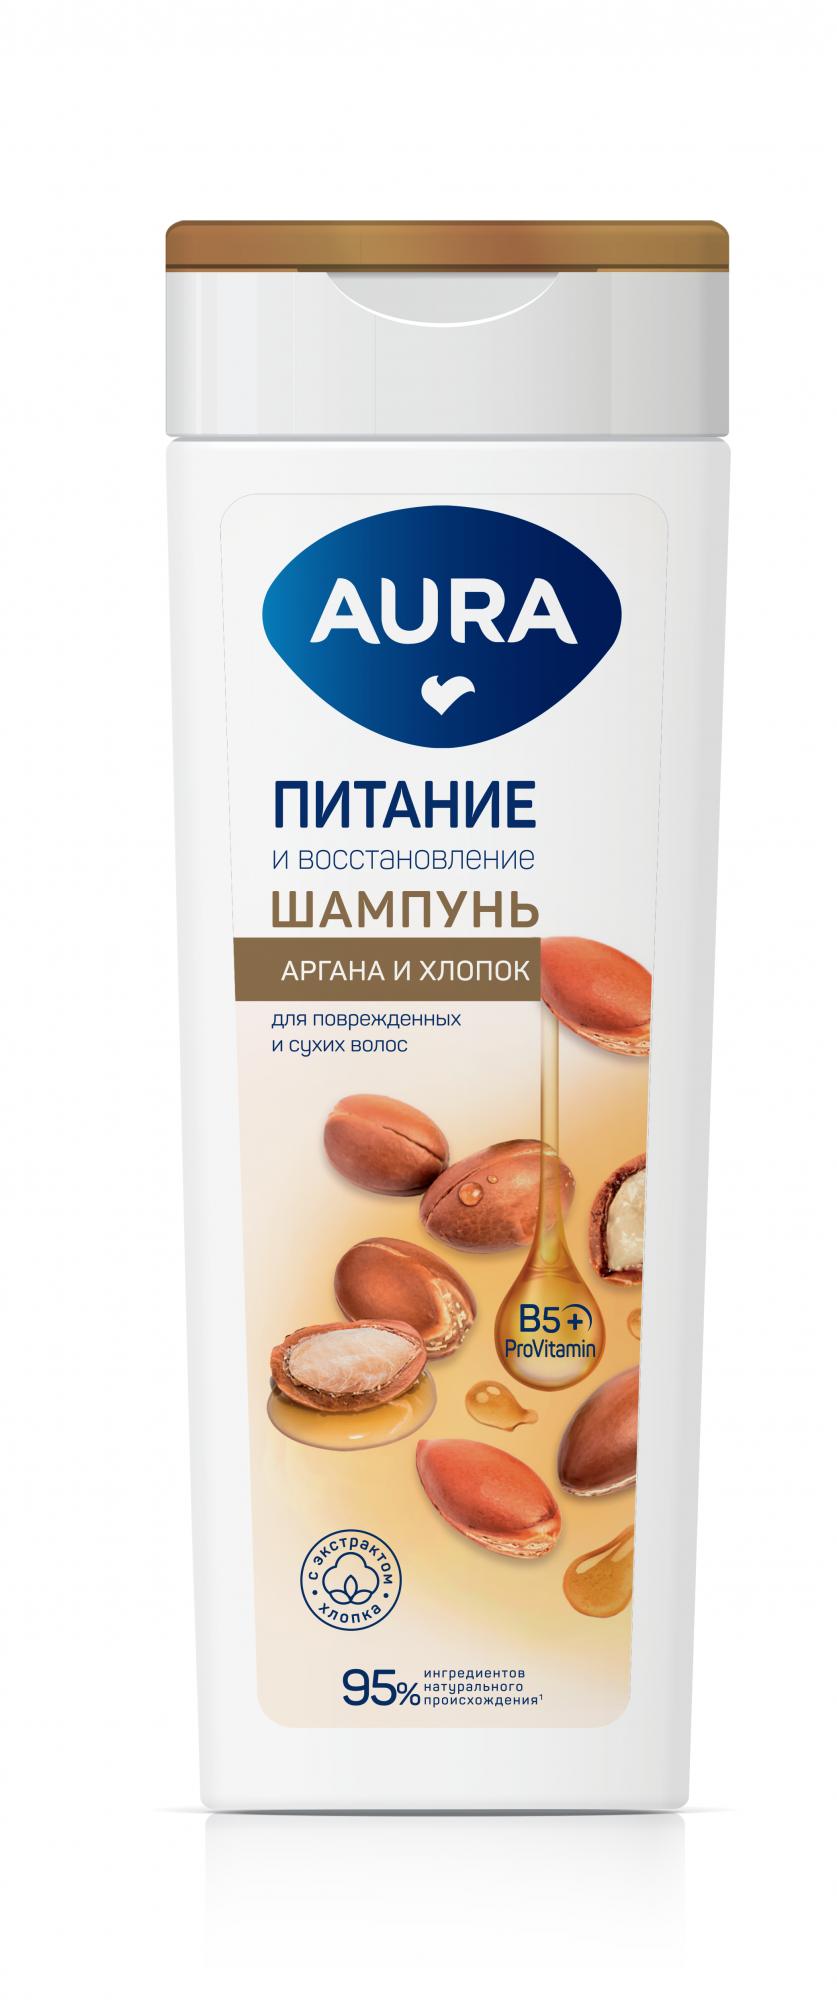 Шампунь для волос AURA Питание и восстановление 380 мл., флакон/флиптоп